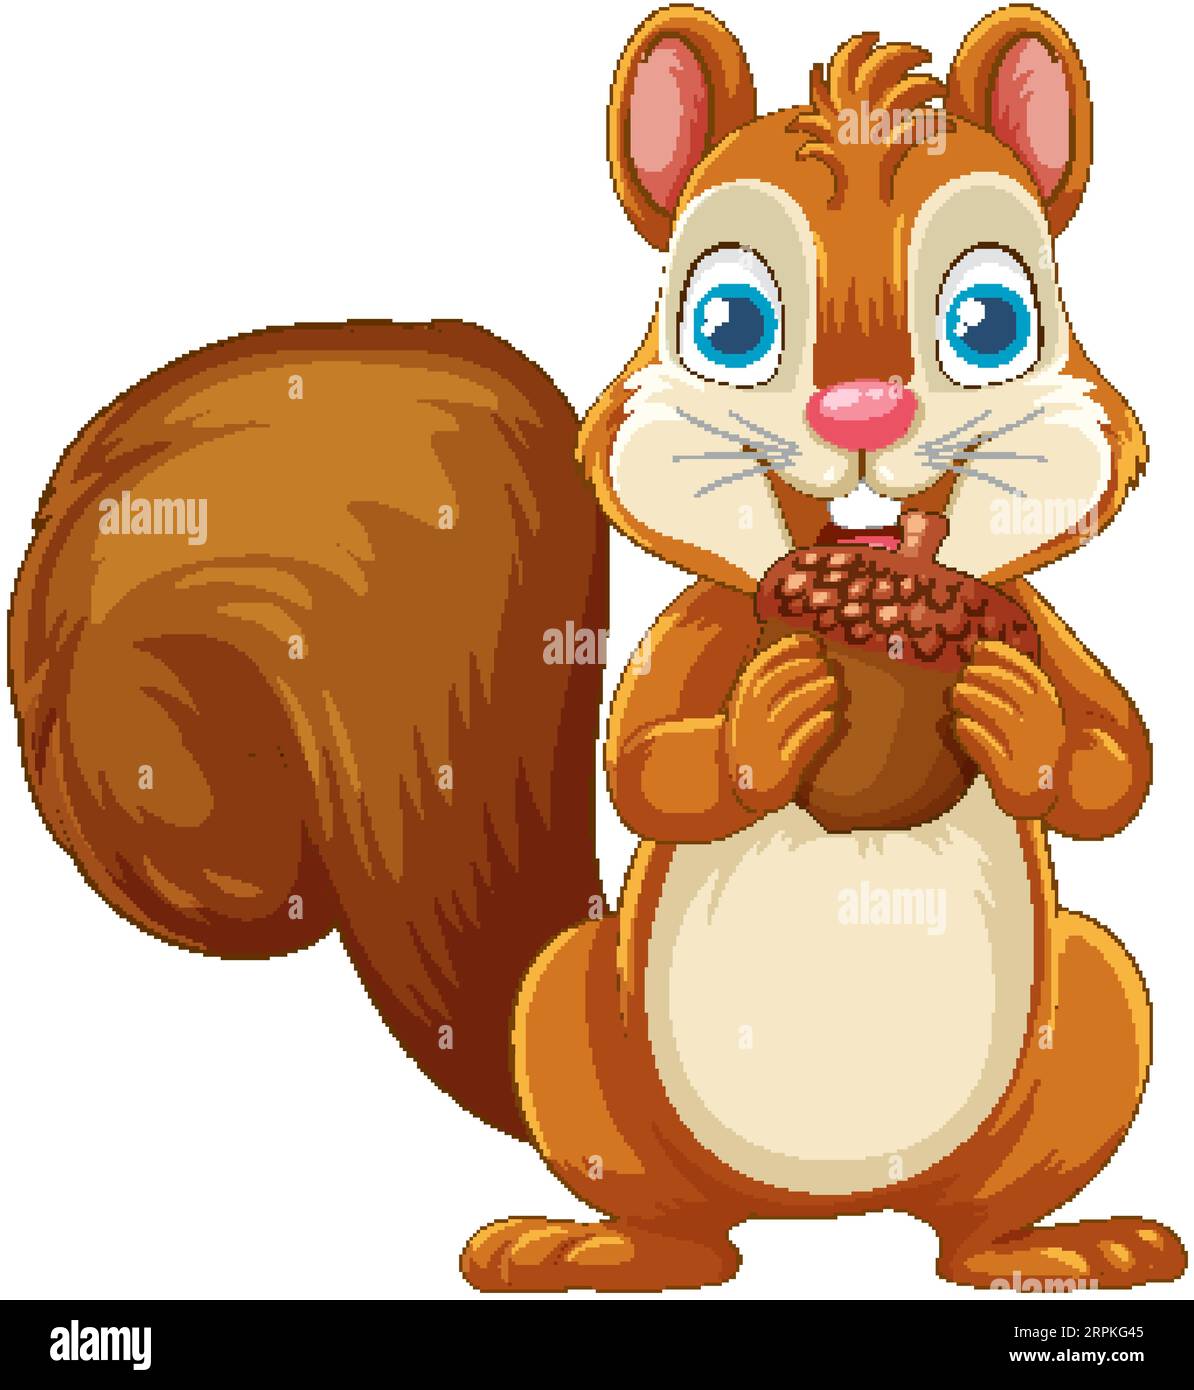 Un cartone animato raffigurante uno scoiattolo sorridente che regge una ghianda, isolato su uno sfondo bianco Illustrazione Vettoriale